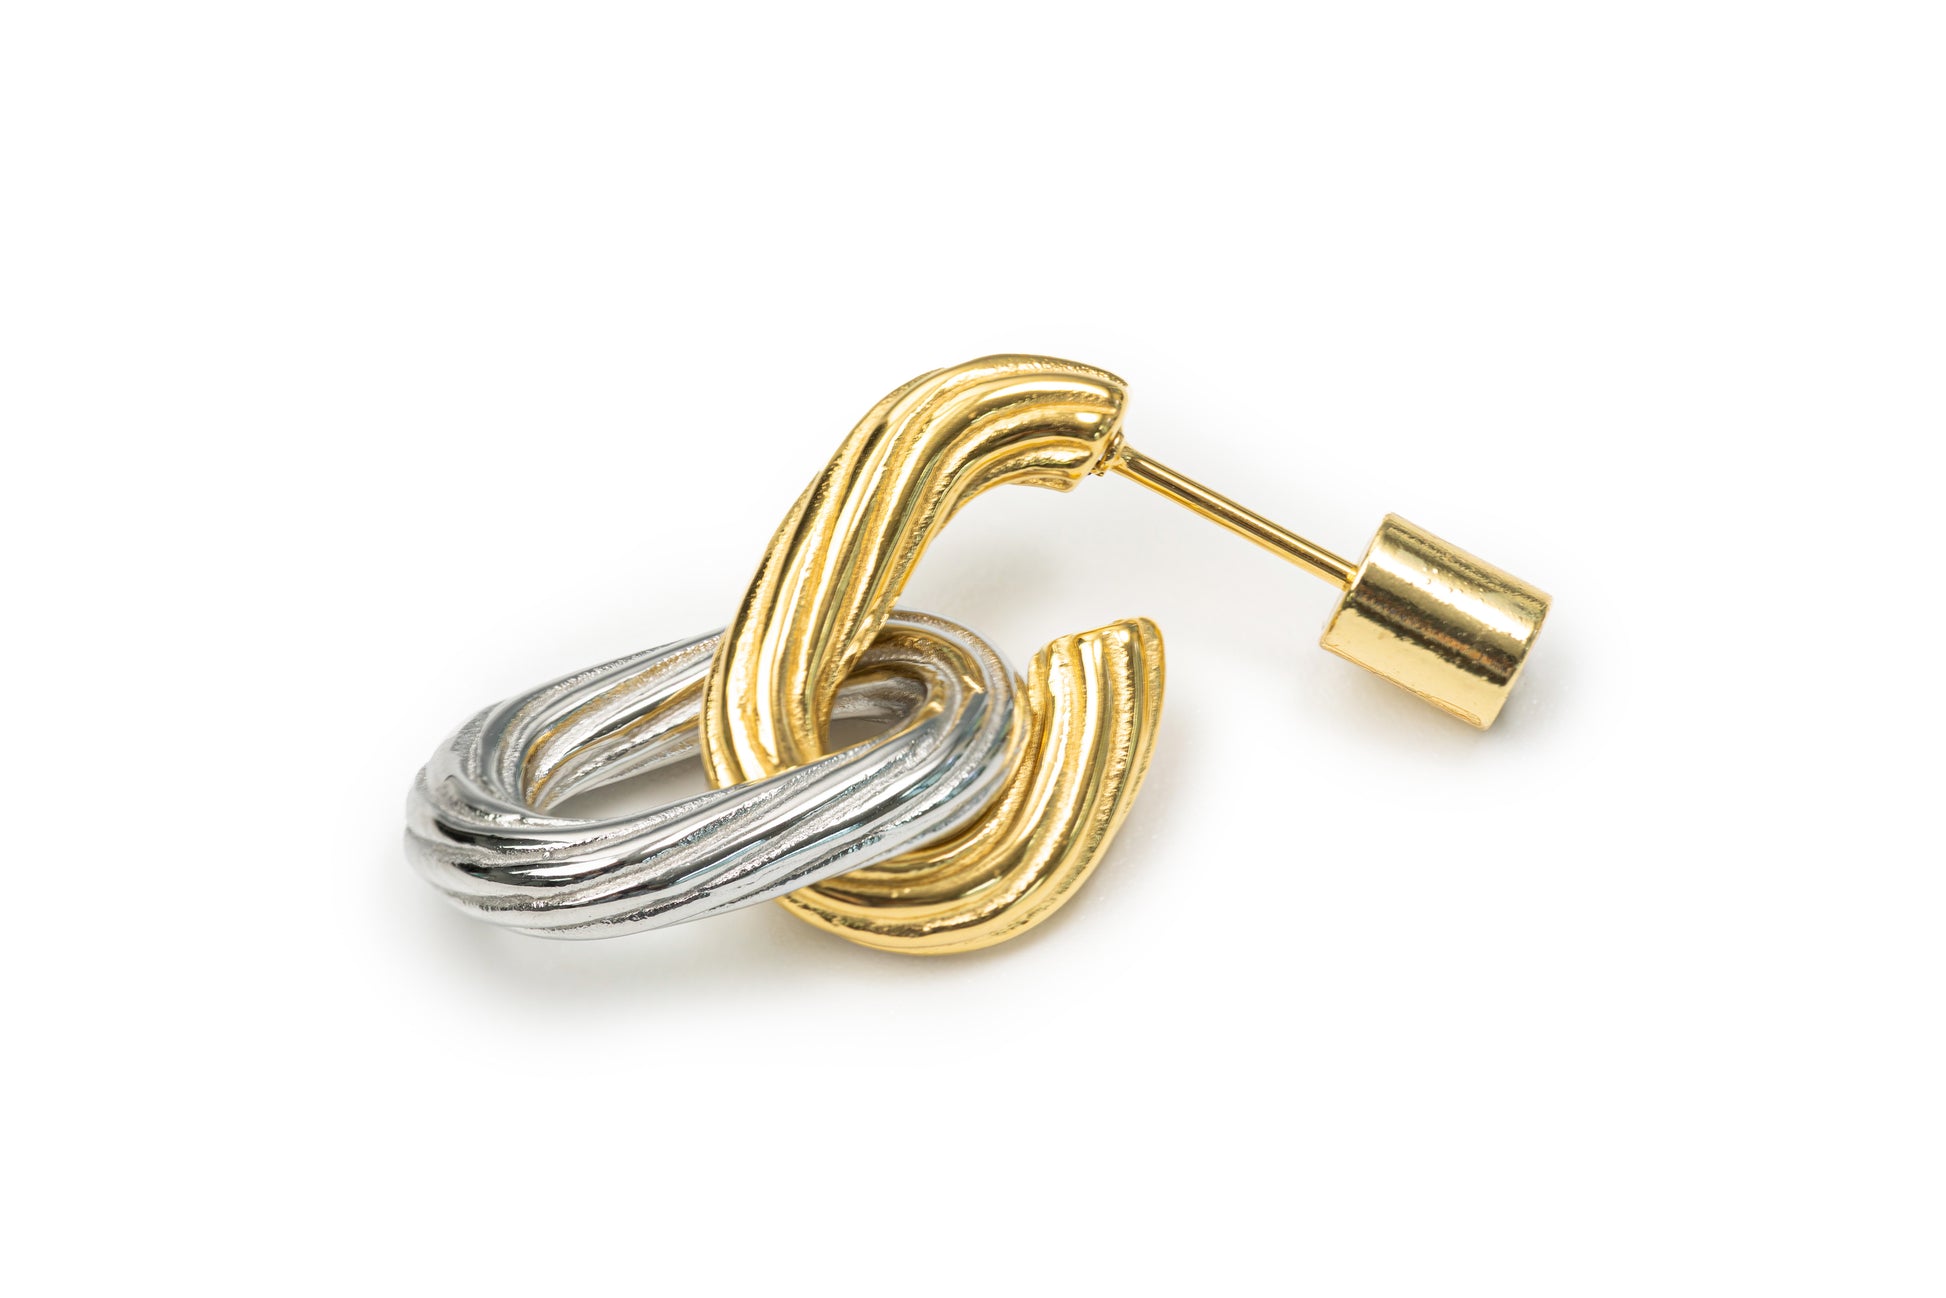 Planderful Bi-Color Chained Links Drop Earrings - Golden & Silver Drop Earrings for Women